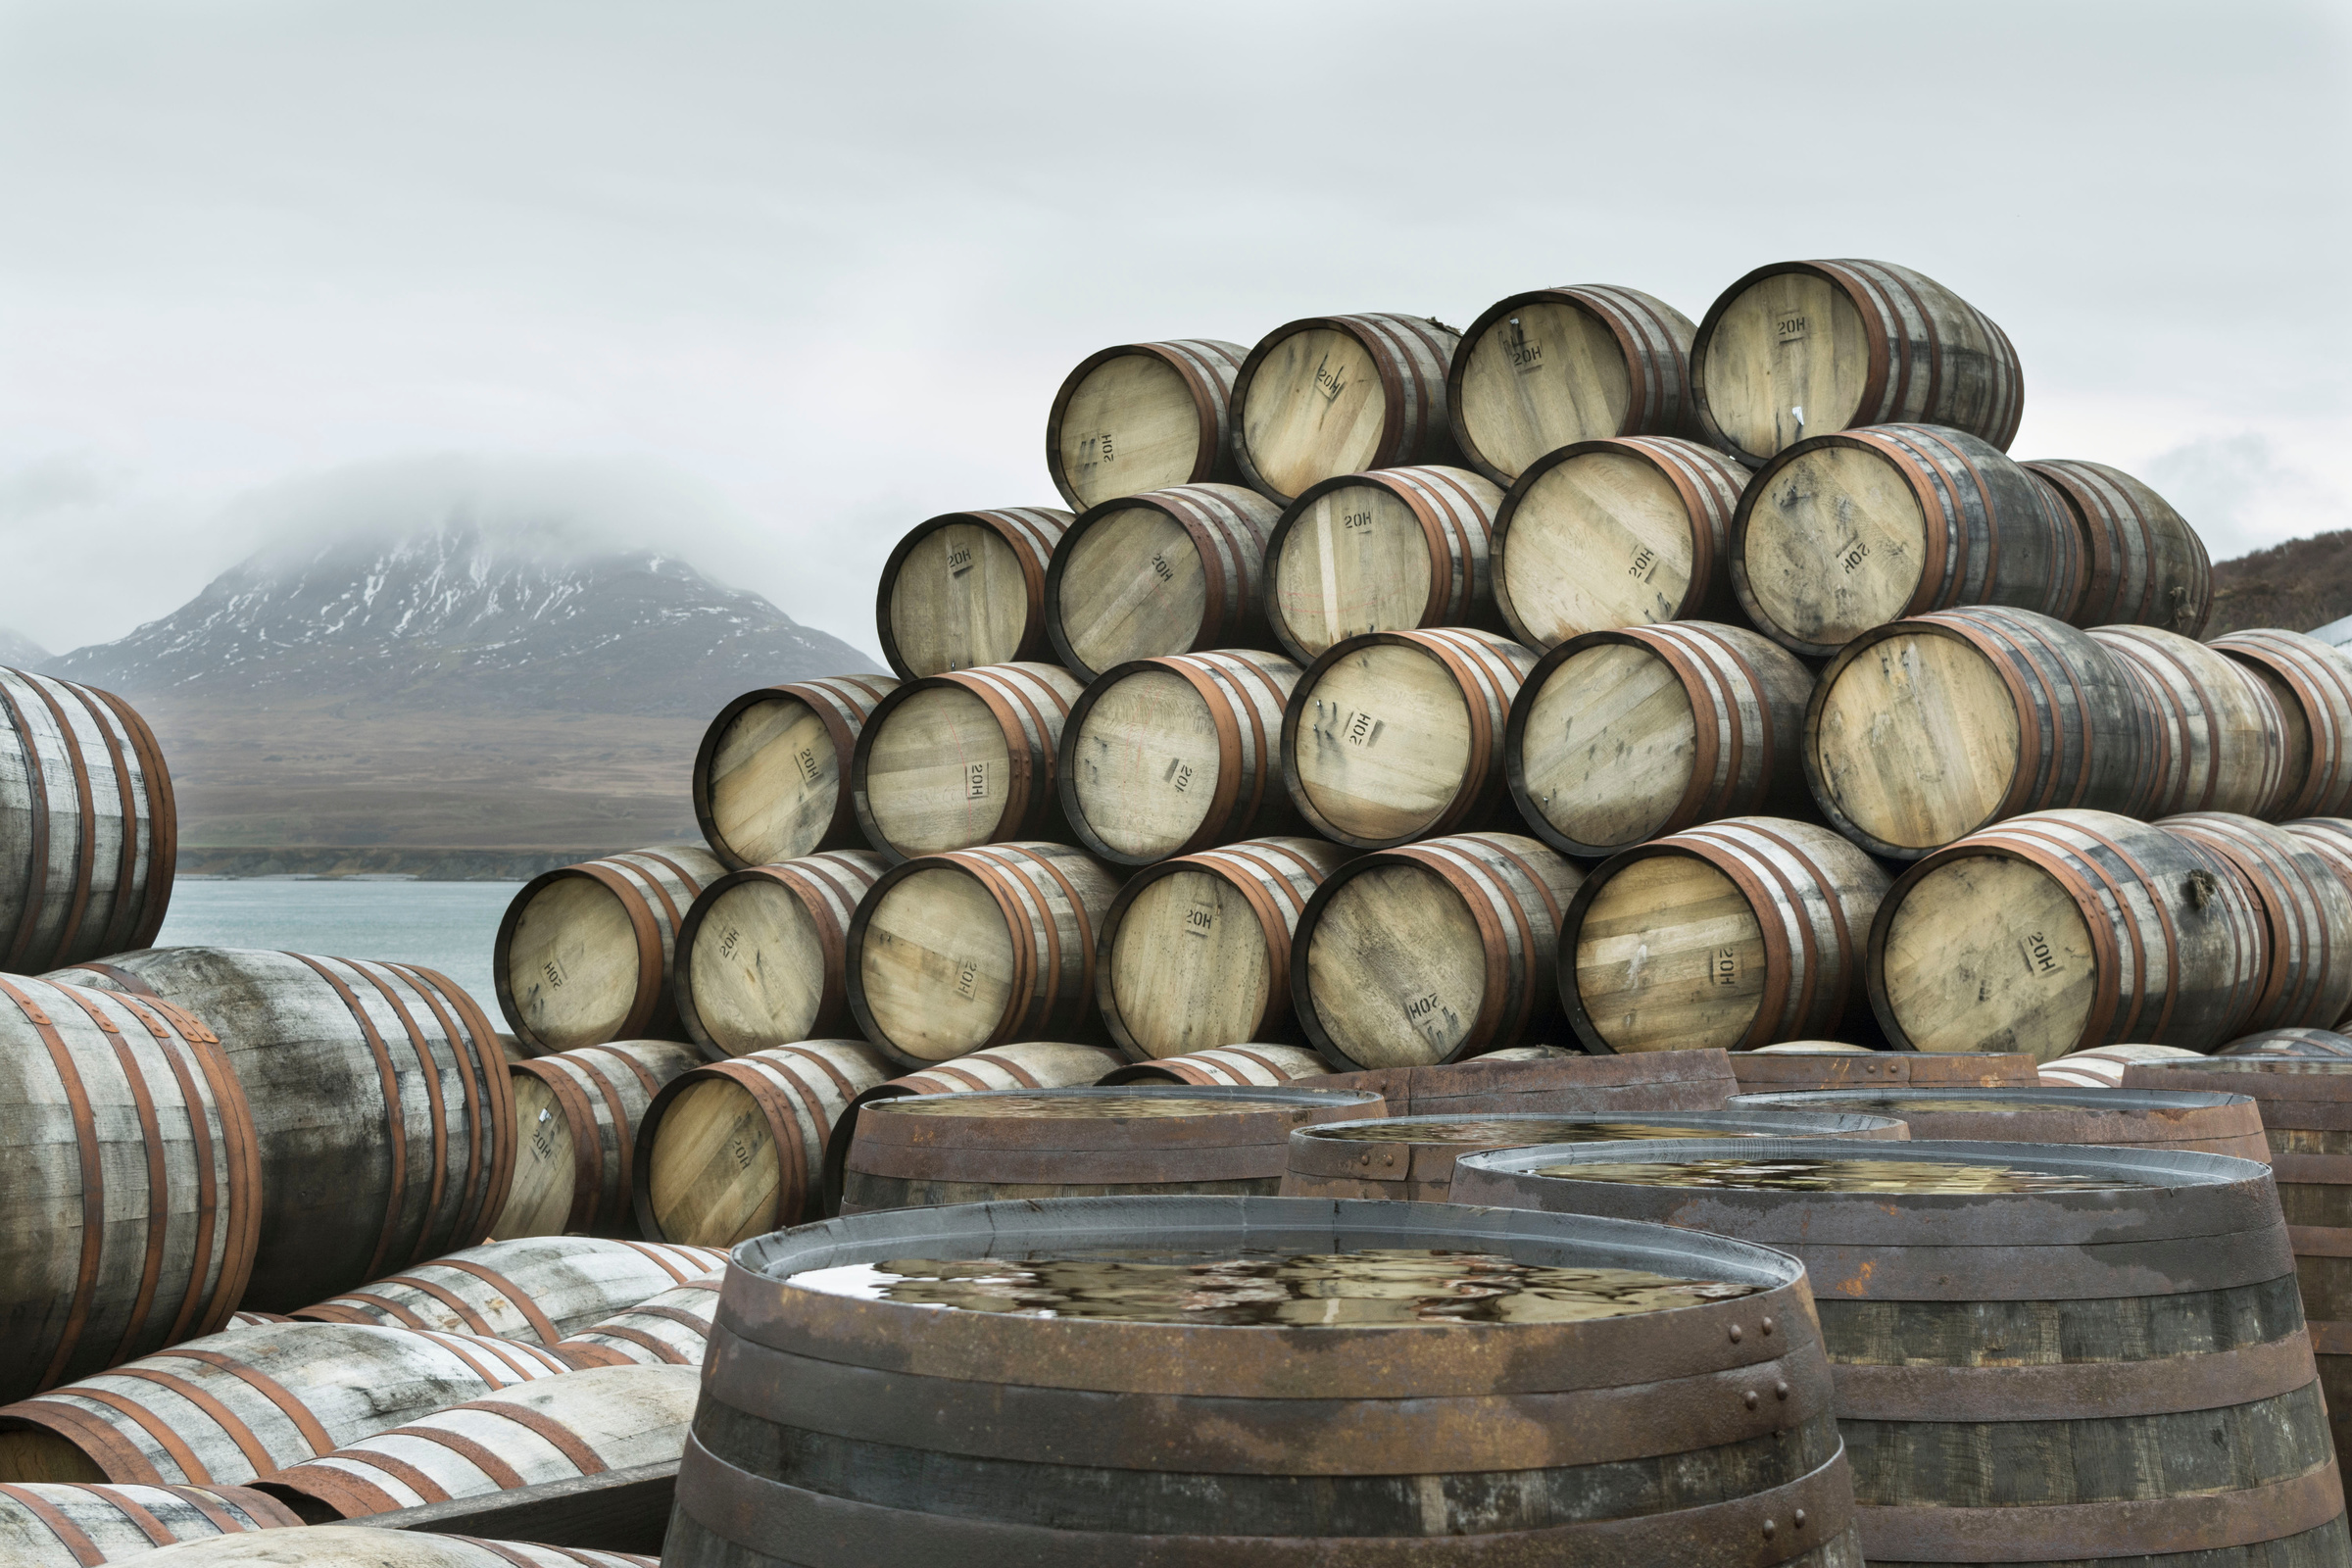 Whisky casks at Bunnahabhain Distillery, Islay February 2017